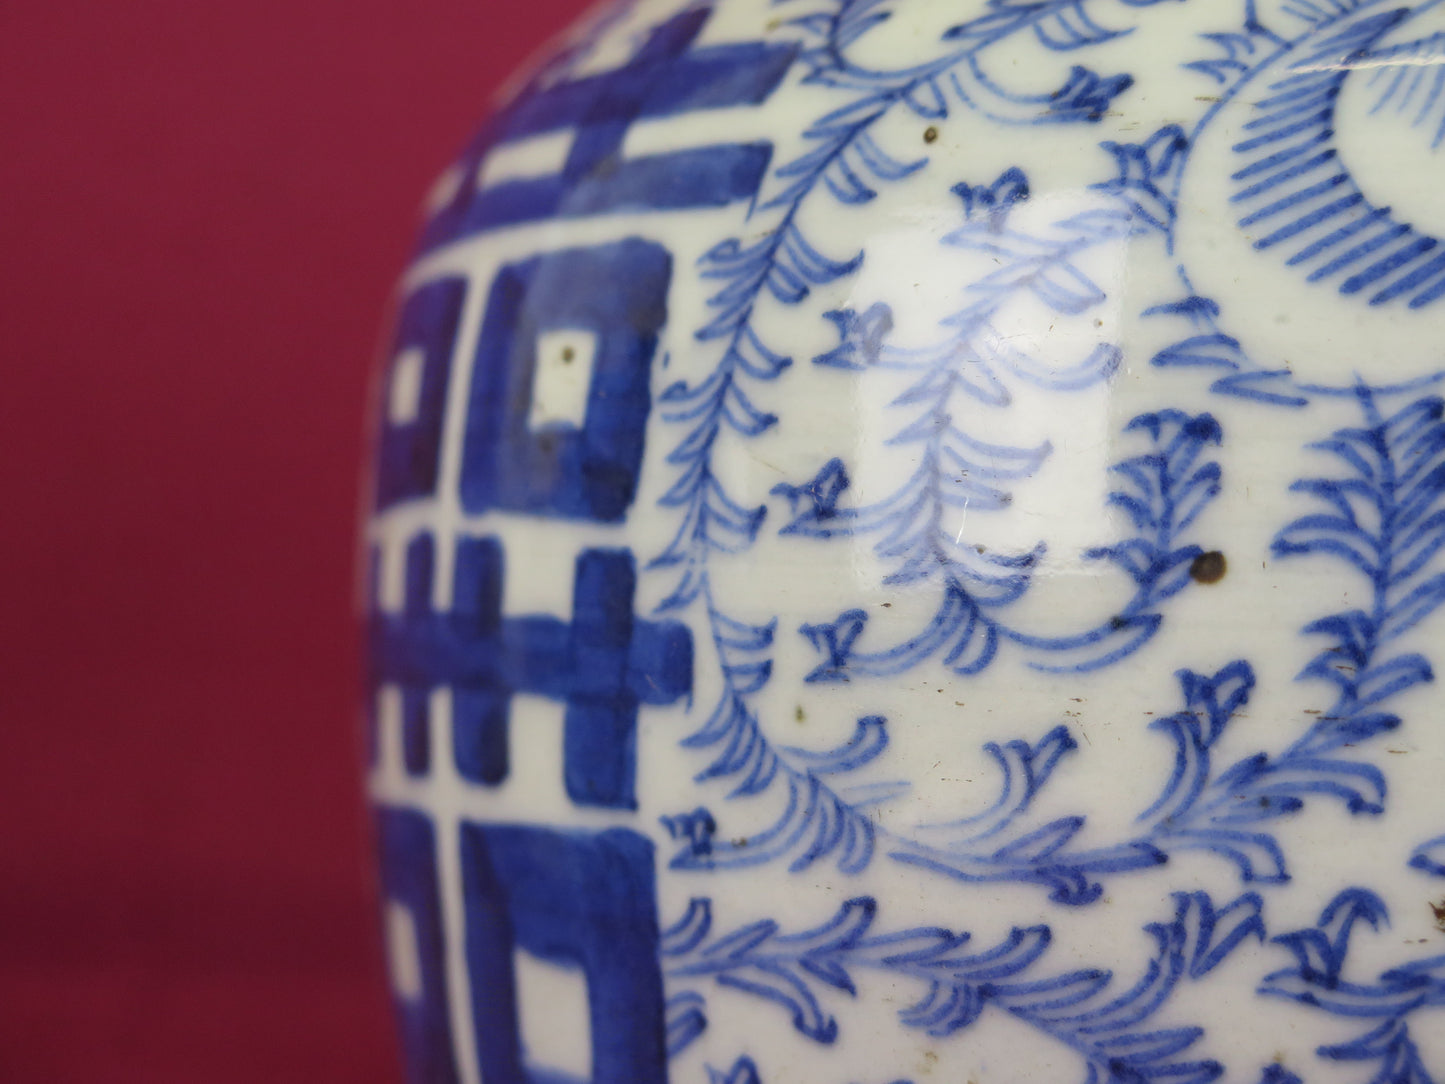 Vaso antico cina ceramica bianco blu simbolo felicita' cinese matrimonio  ceramica Cina CM2